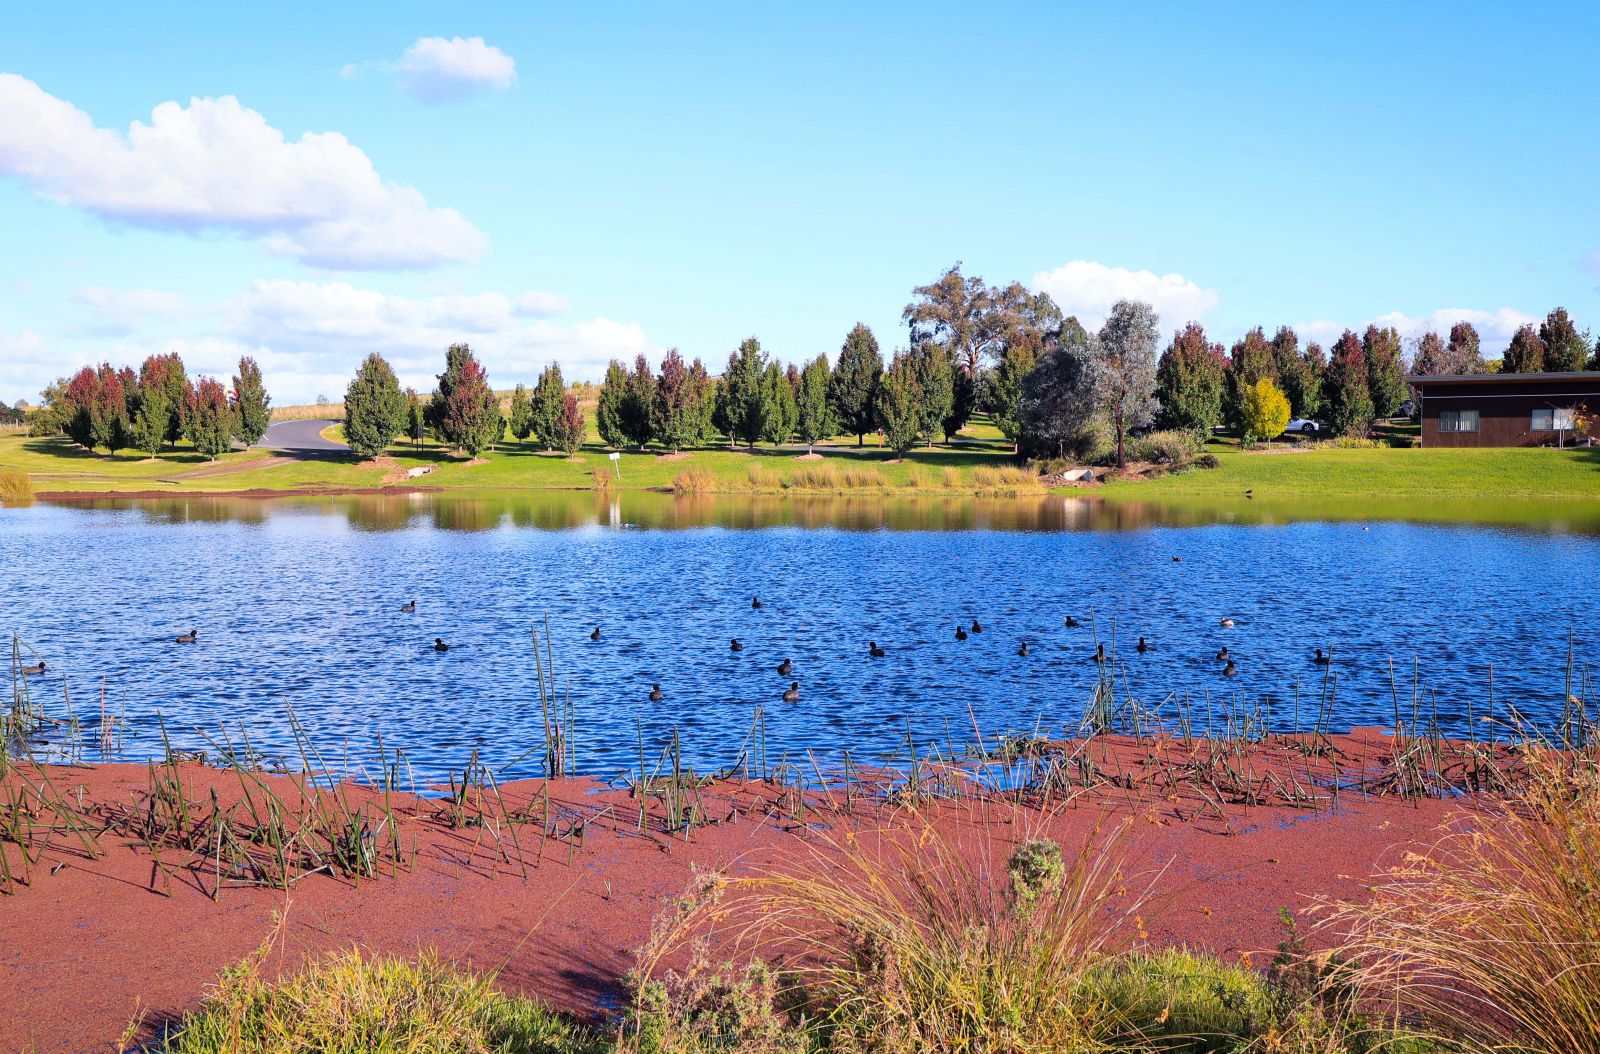 … và nông trại có cả hồ nước nhỏ, chứa đủ nước để trồng cỏ và du khách có cơ hội ngắm những chú sâm cầm tung tăng trên mặt nước…